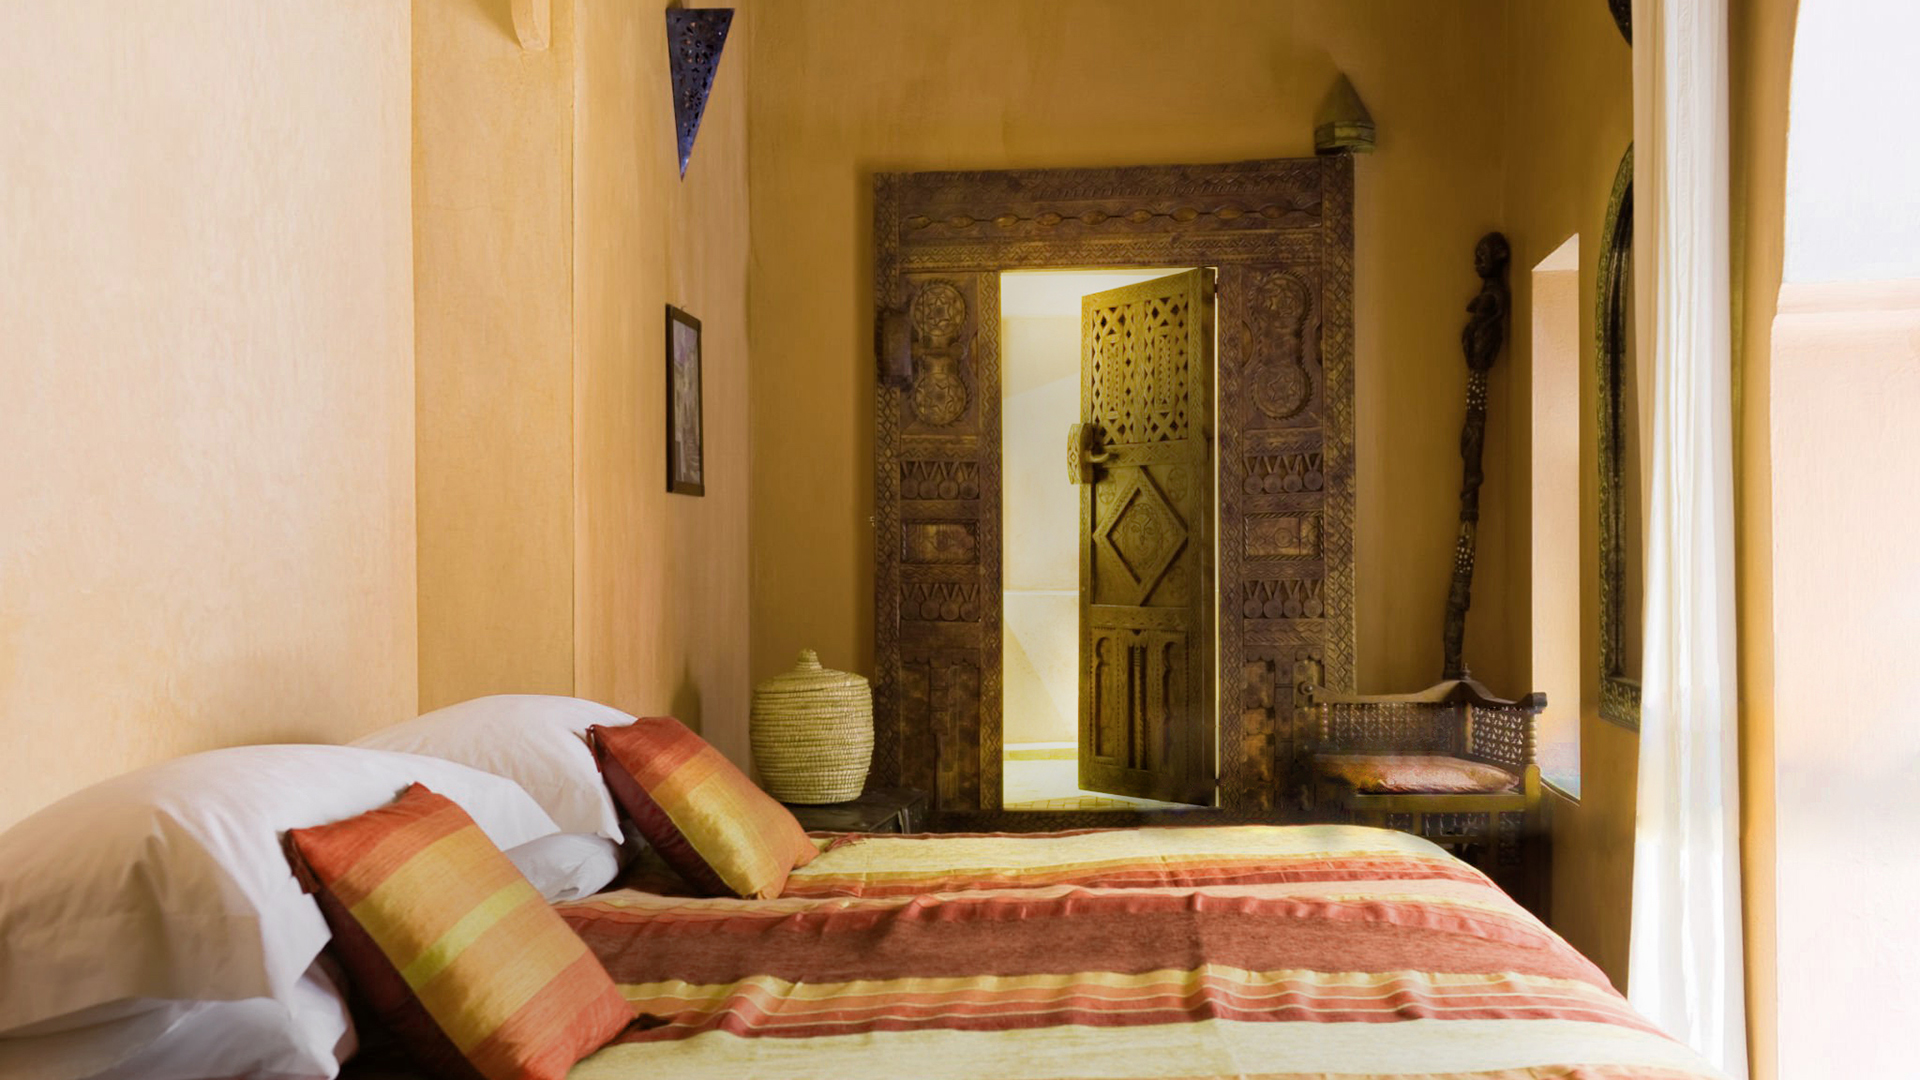 Arap tarzı yatak odası, duvarlarda tadelakt ile